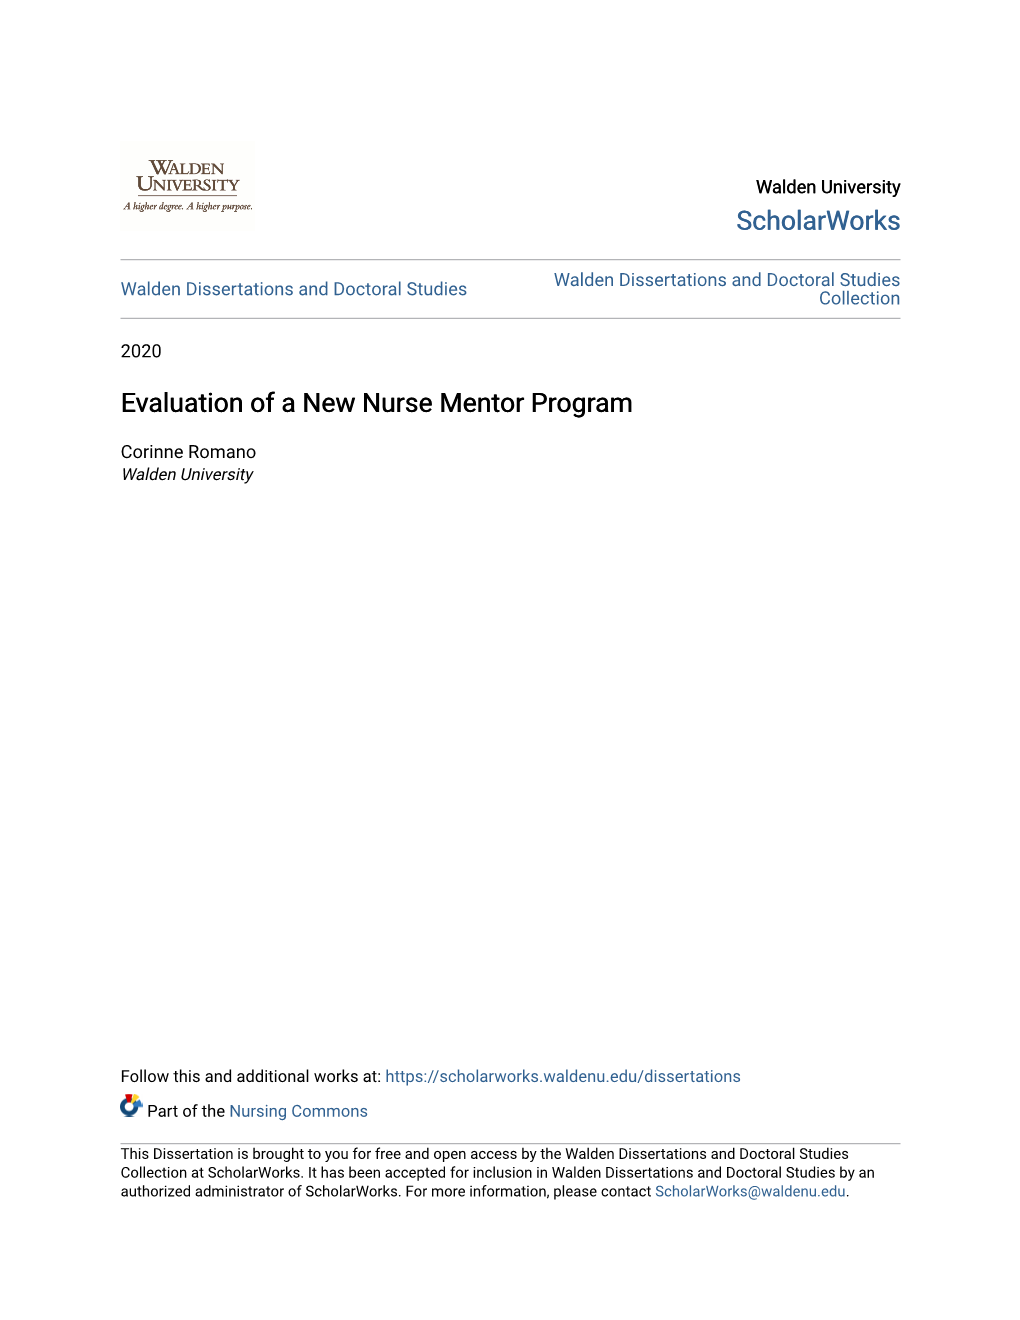 Evaluation of a New Nurse Mentor Program